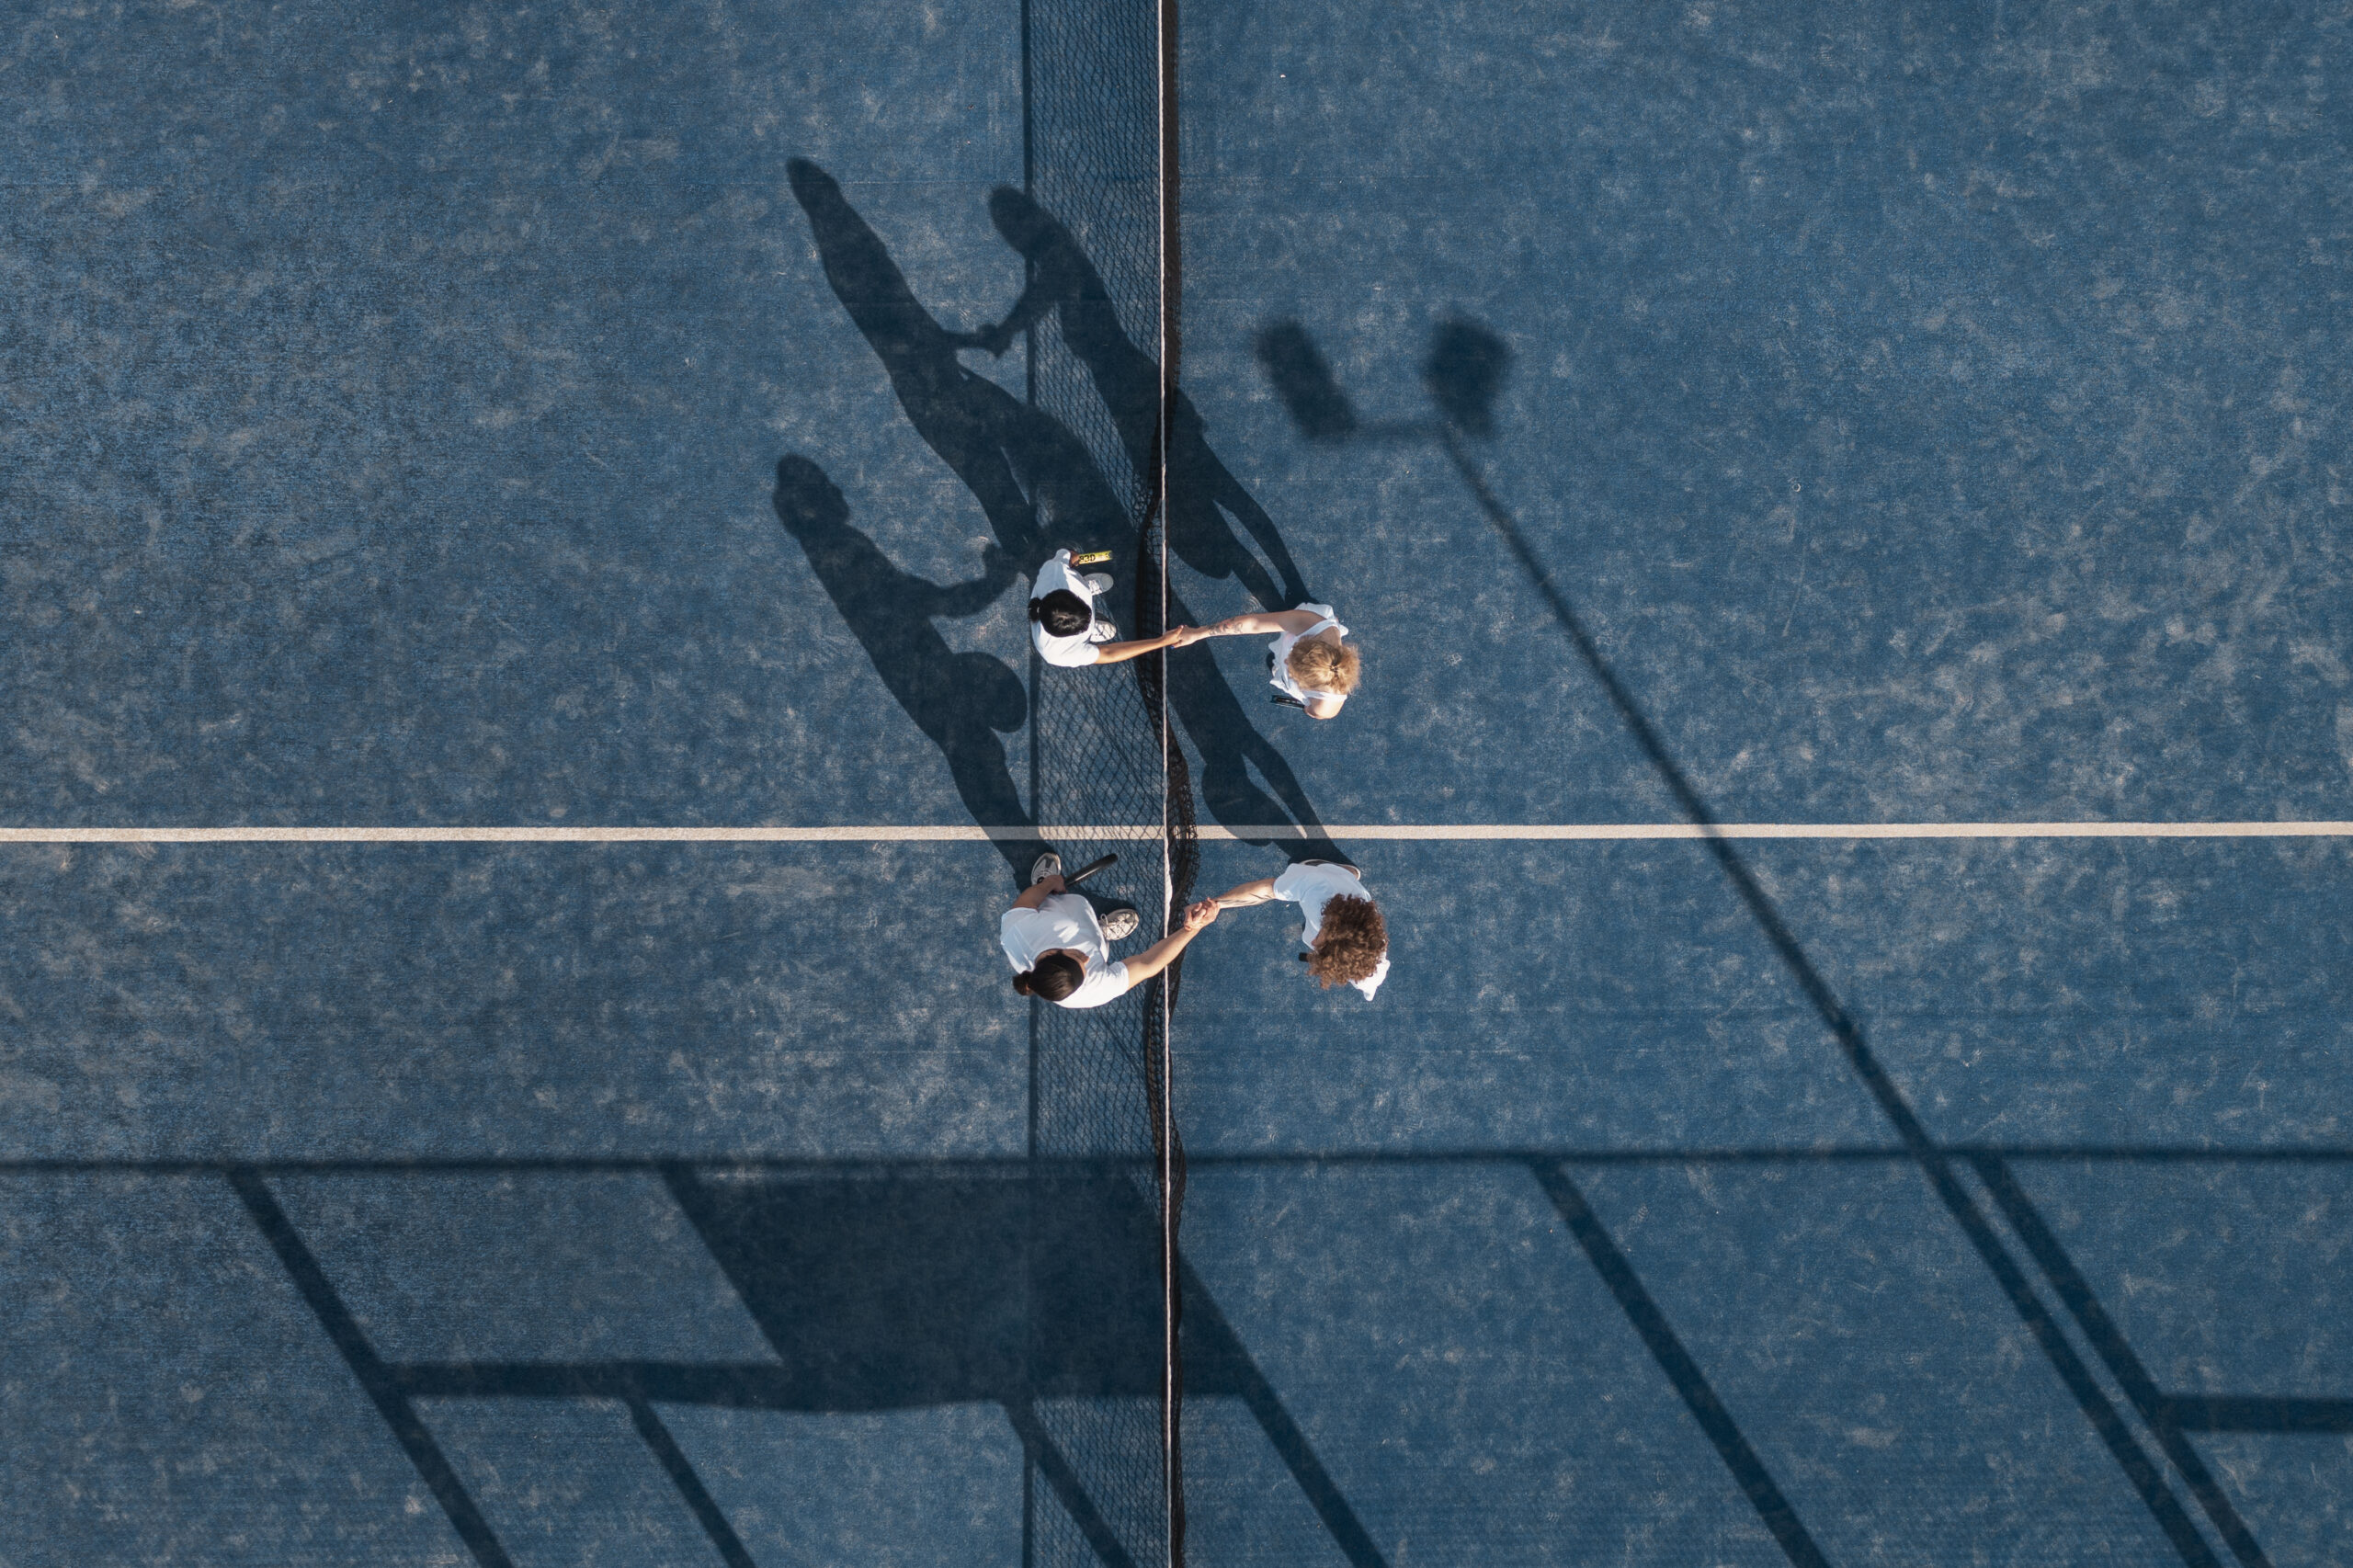 people-playing-tennis